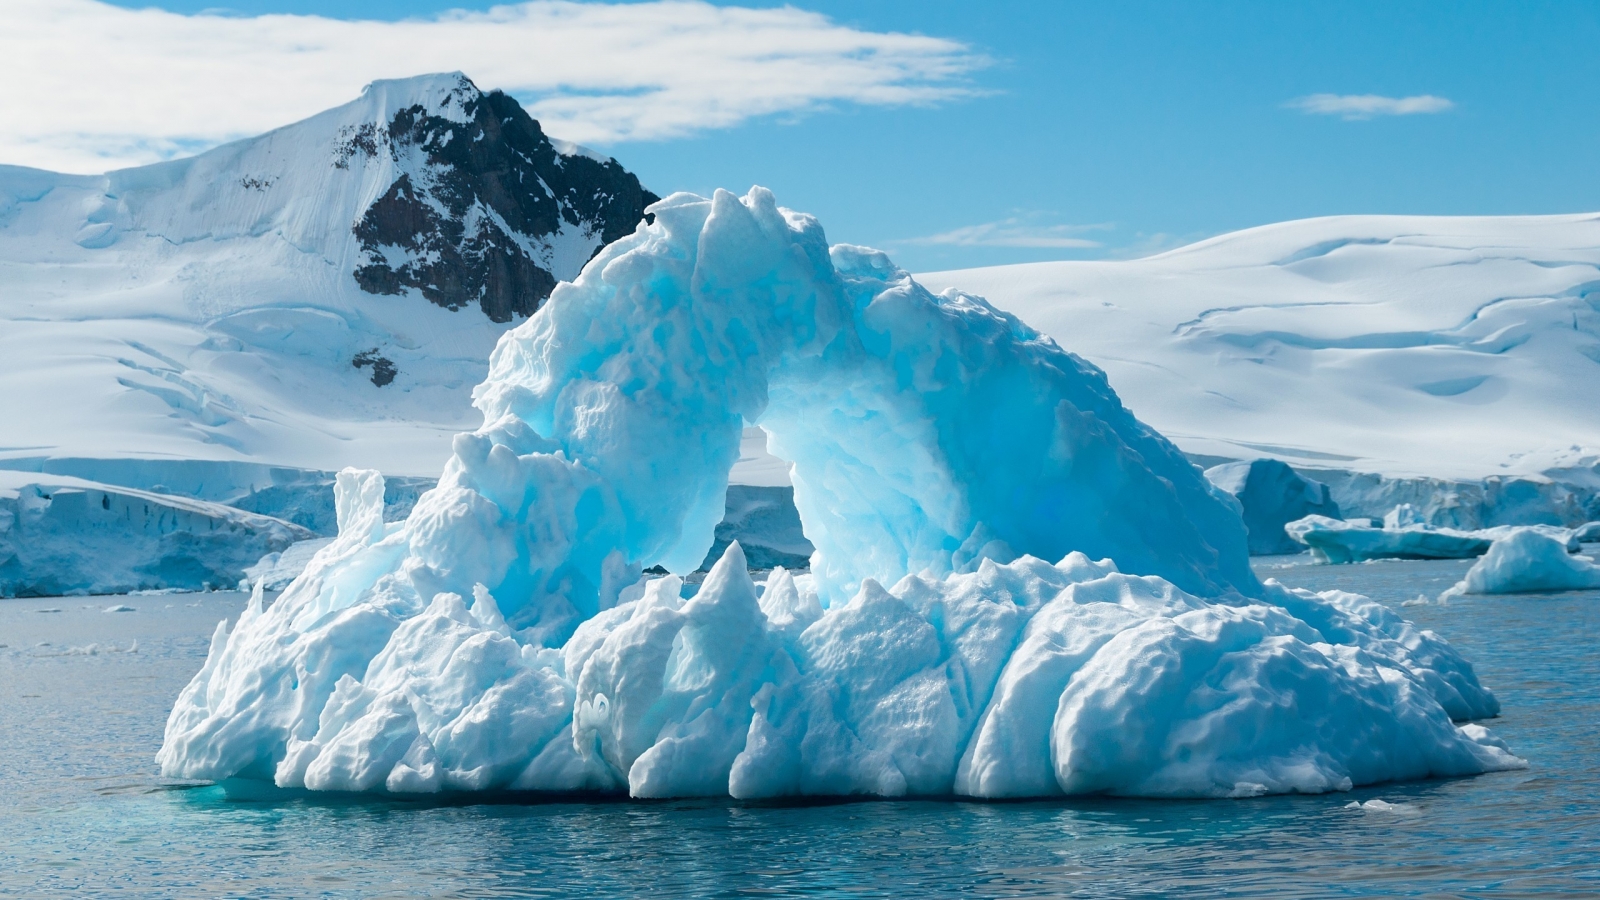 Blue Iceberg for 1600 x 900 HDTV resolution